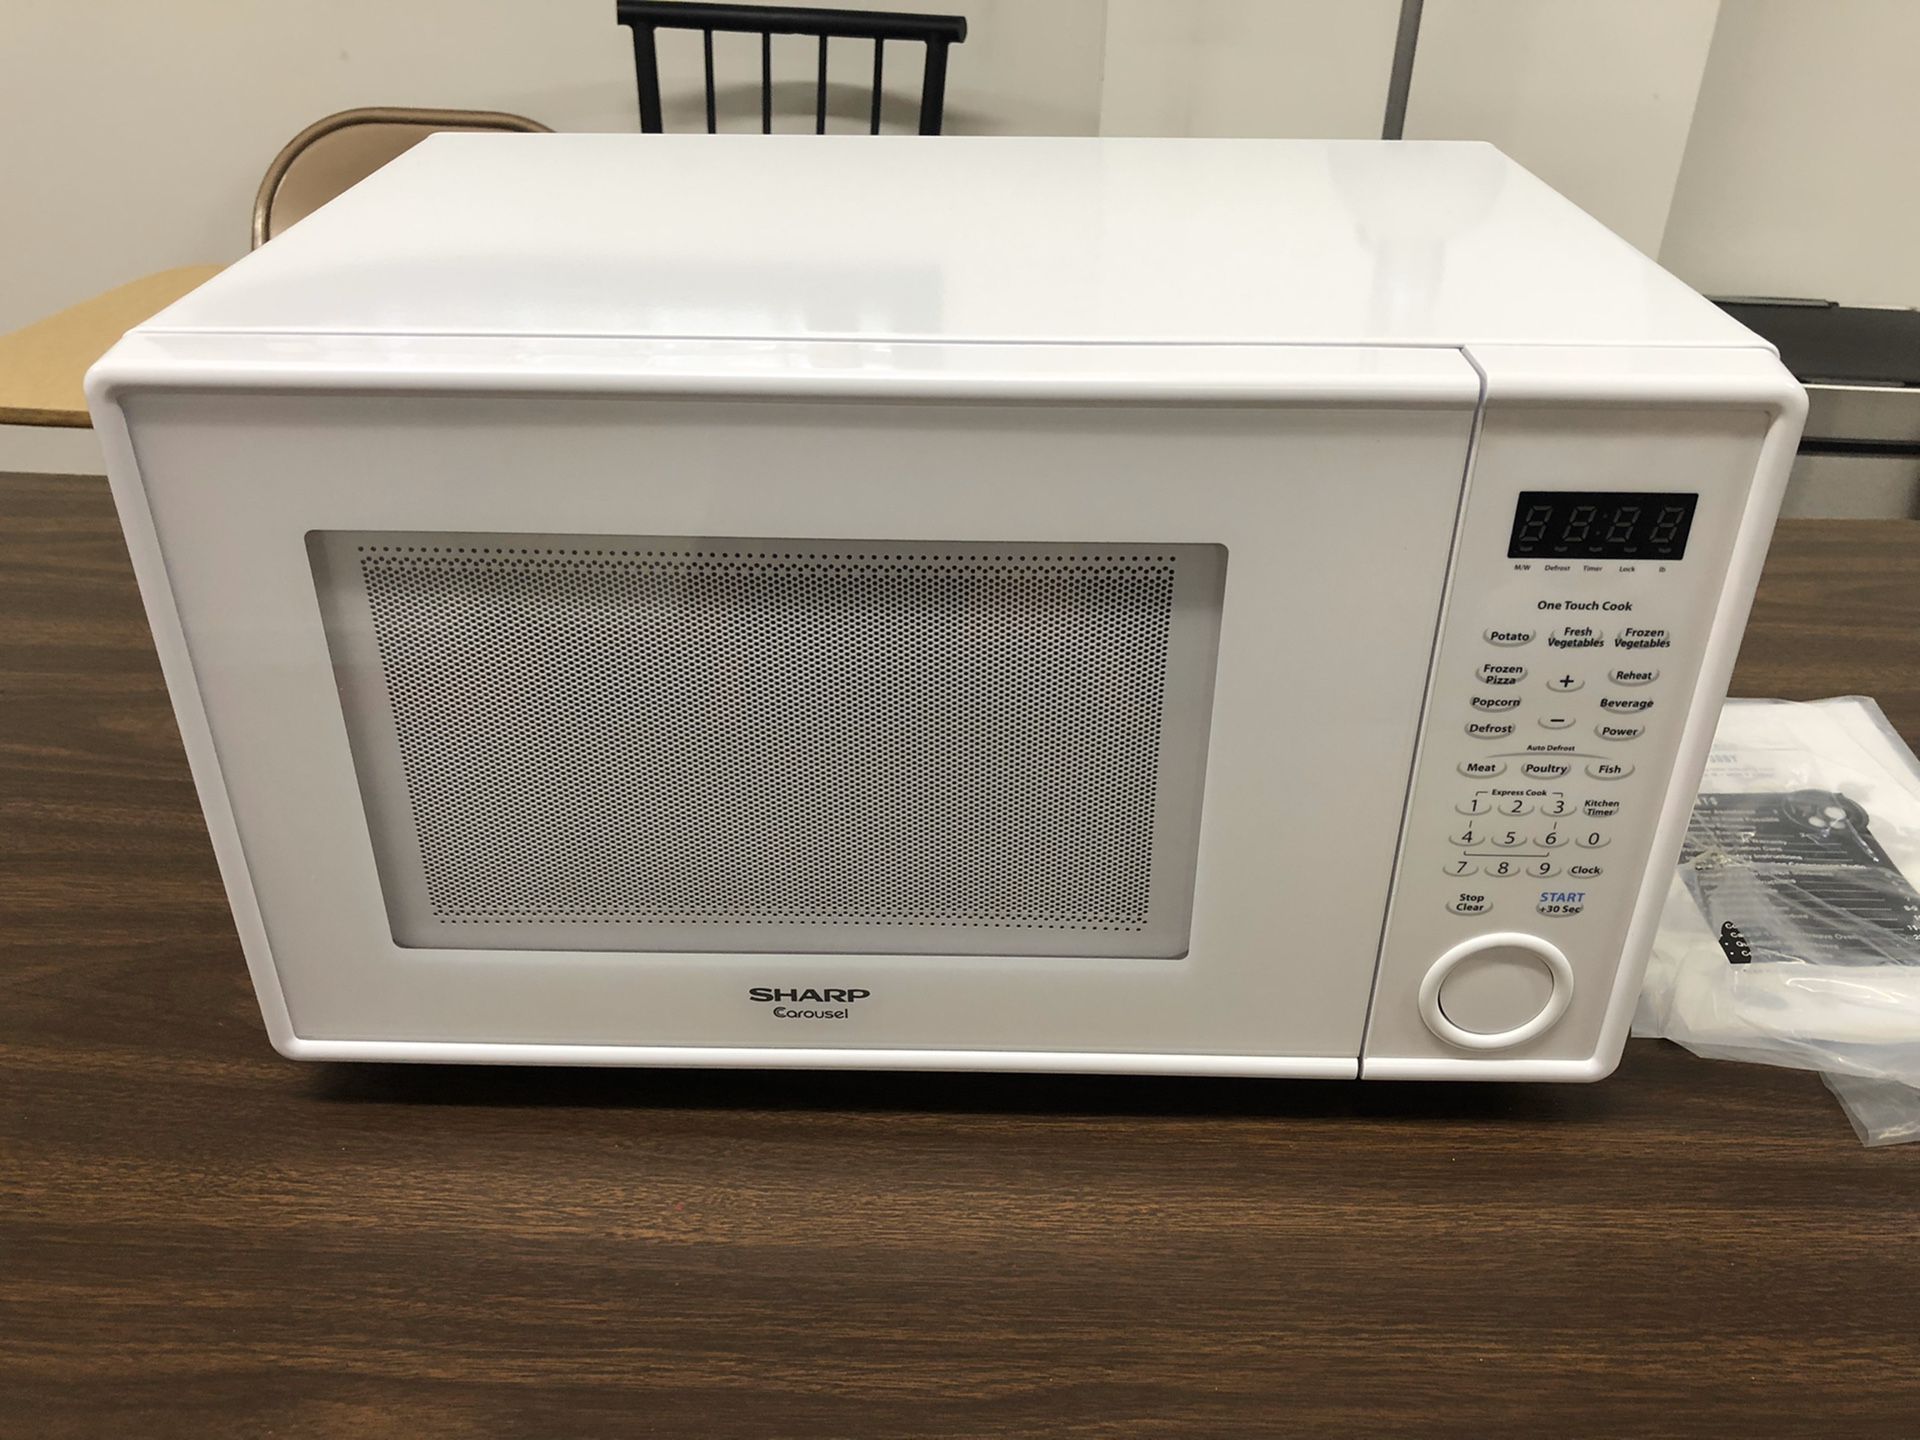 Microwave 1000 watts (NEW)